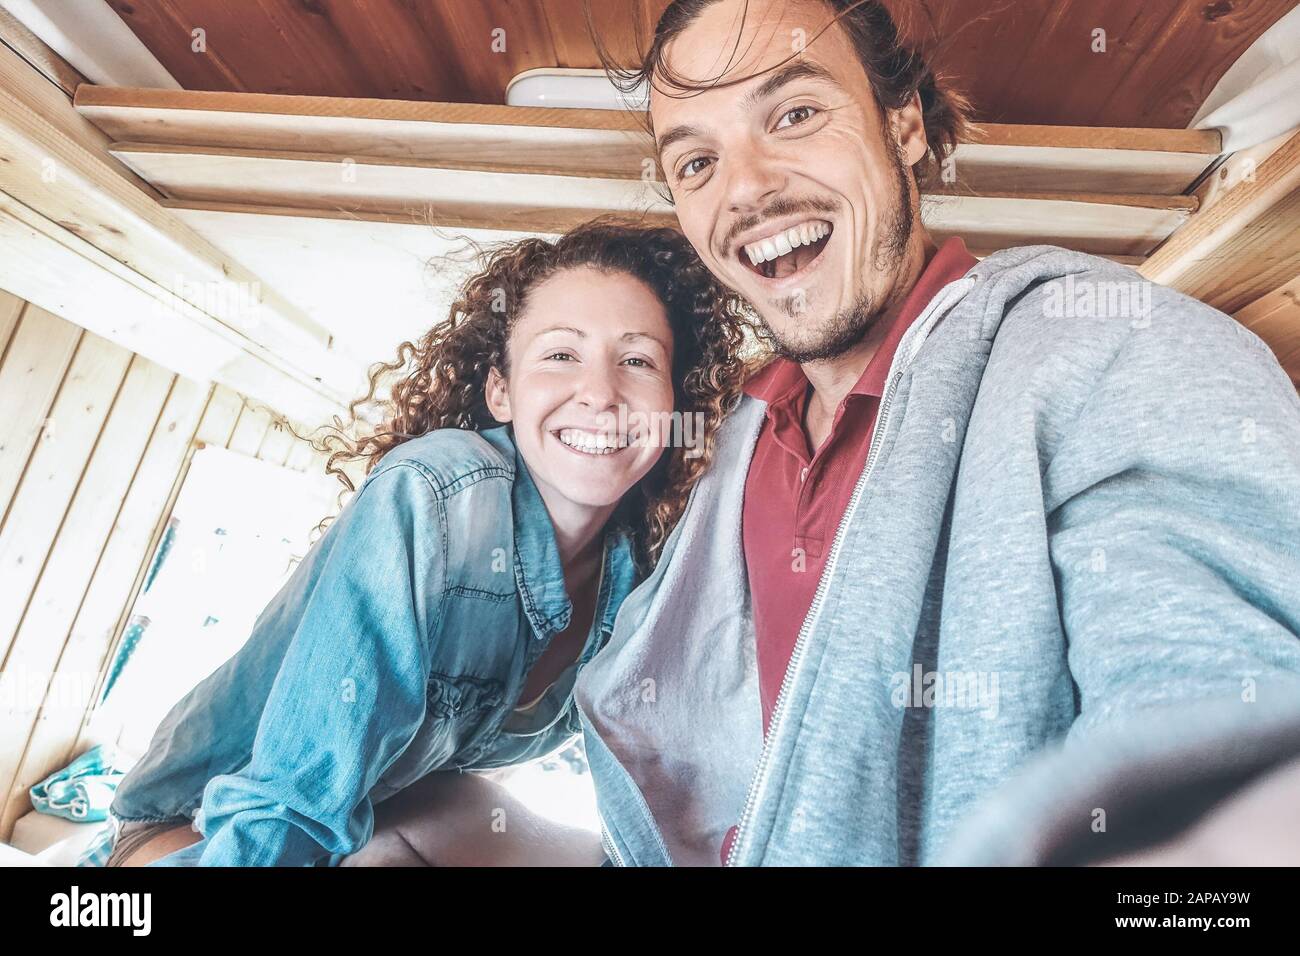 Glückliches Paar, das während einer Roadtrip ein selfie im Mini-Van-Camper macht - Reisen Sie Leute, die Spaß haben, mit dem Handy Fotos im Vintage-Kleinbus zu machen Stockfoto